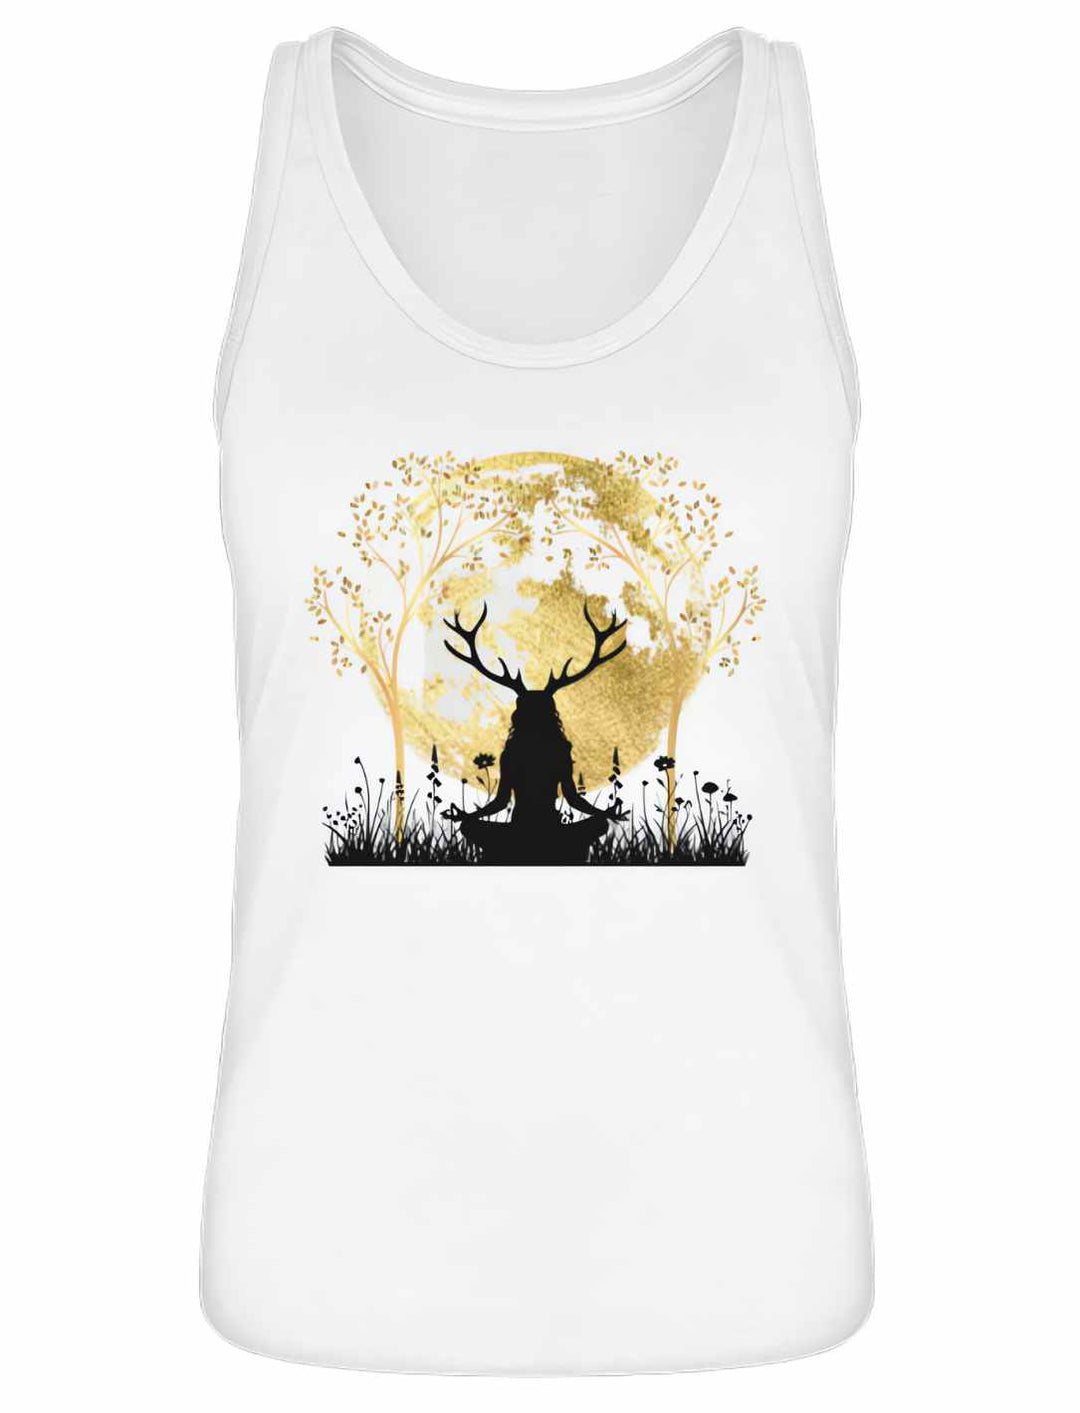 Damen Tank Top 'Druidin der alten Wälder' in Weiß, zeigt mystisches Design mit Mond und Lebensbaum.